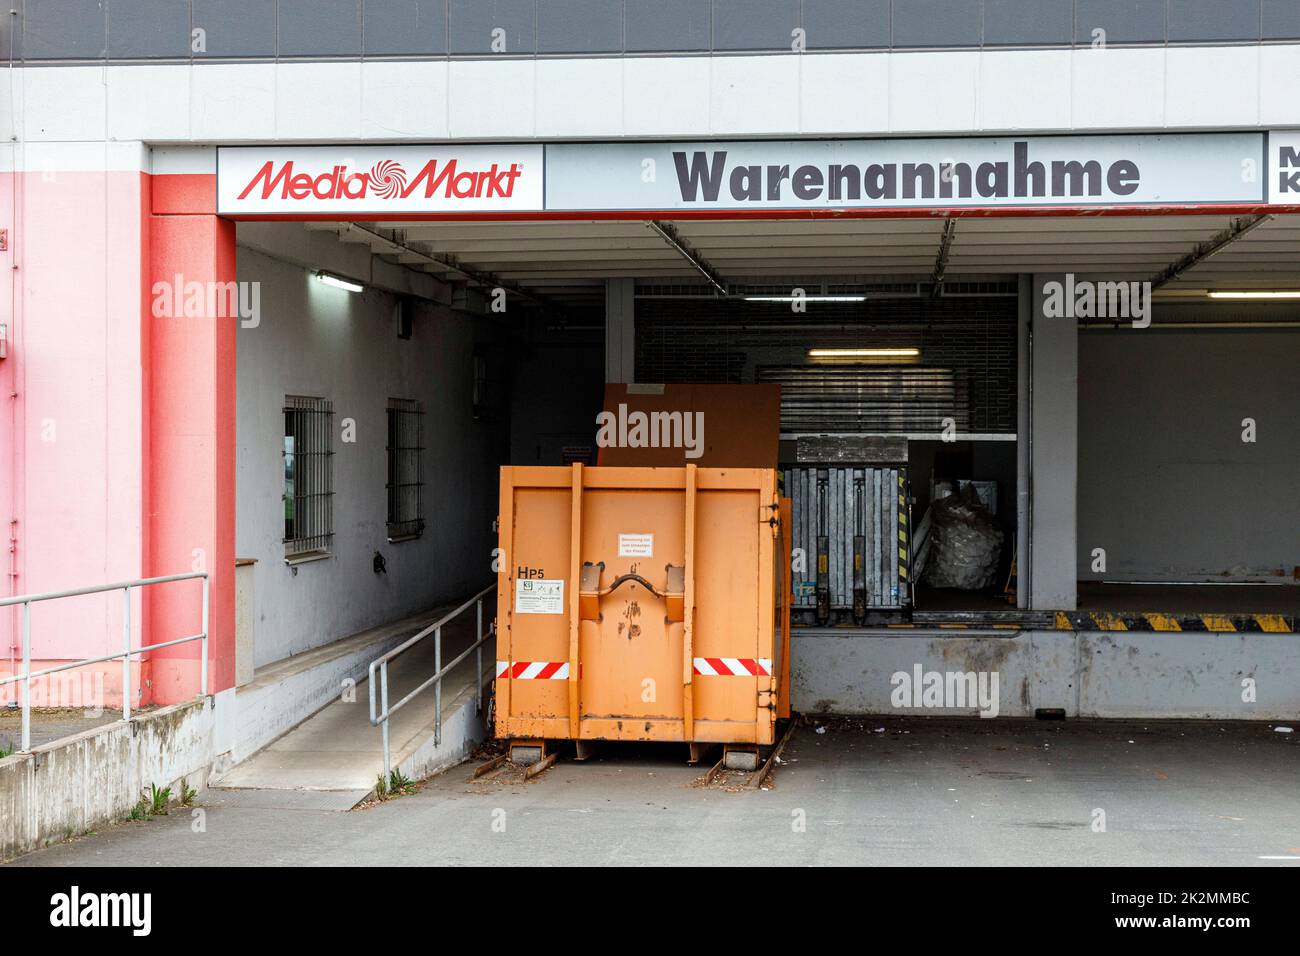 Mediamarkt receiving department Stock Photo